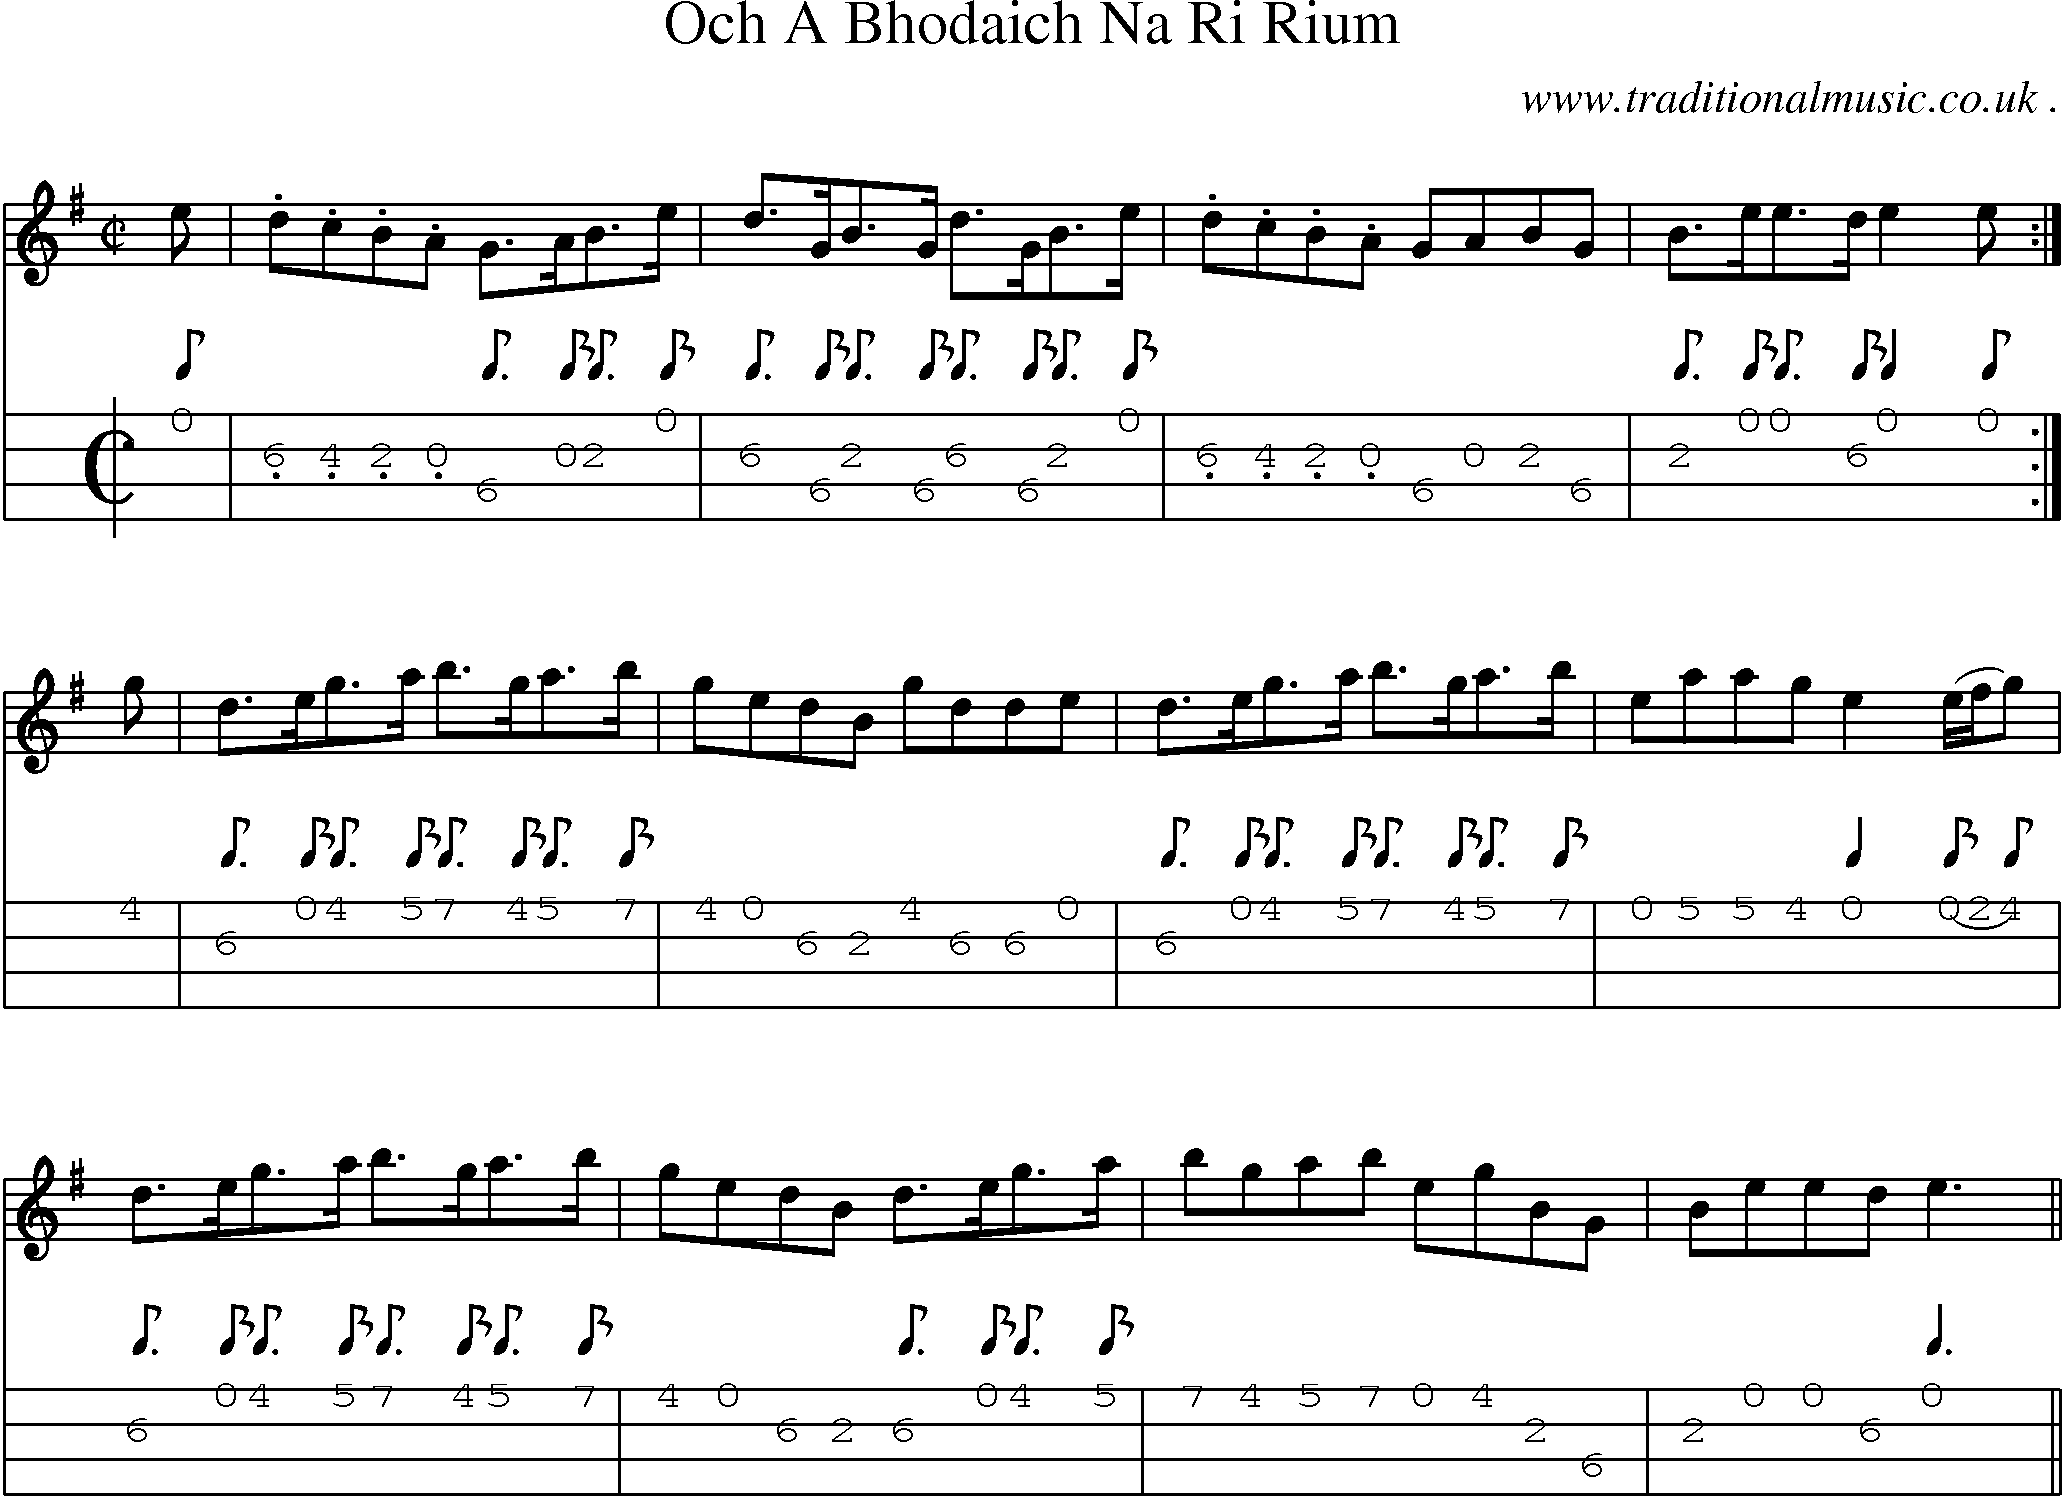 Sheet-Music and Mandolin Tabs for Och A Bhodaich Na Ri Rium